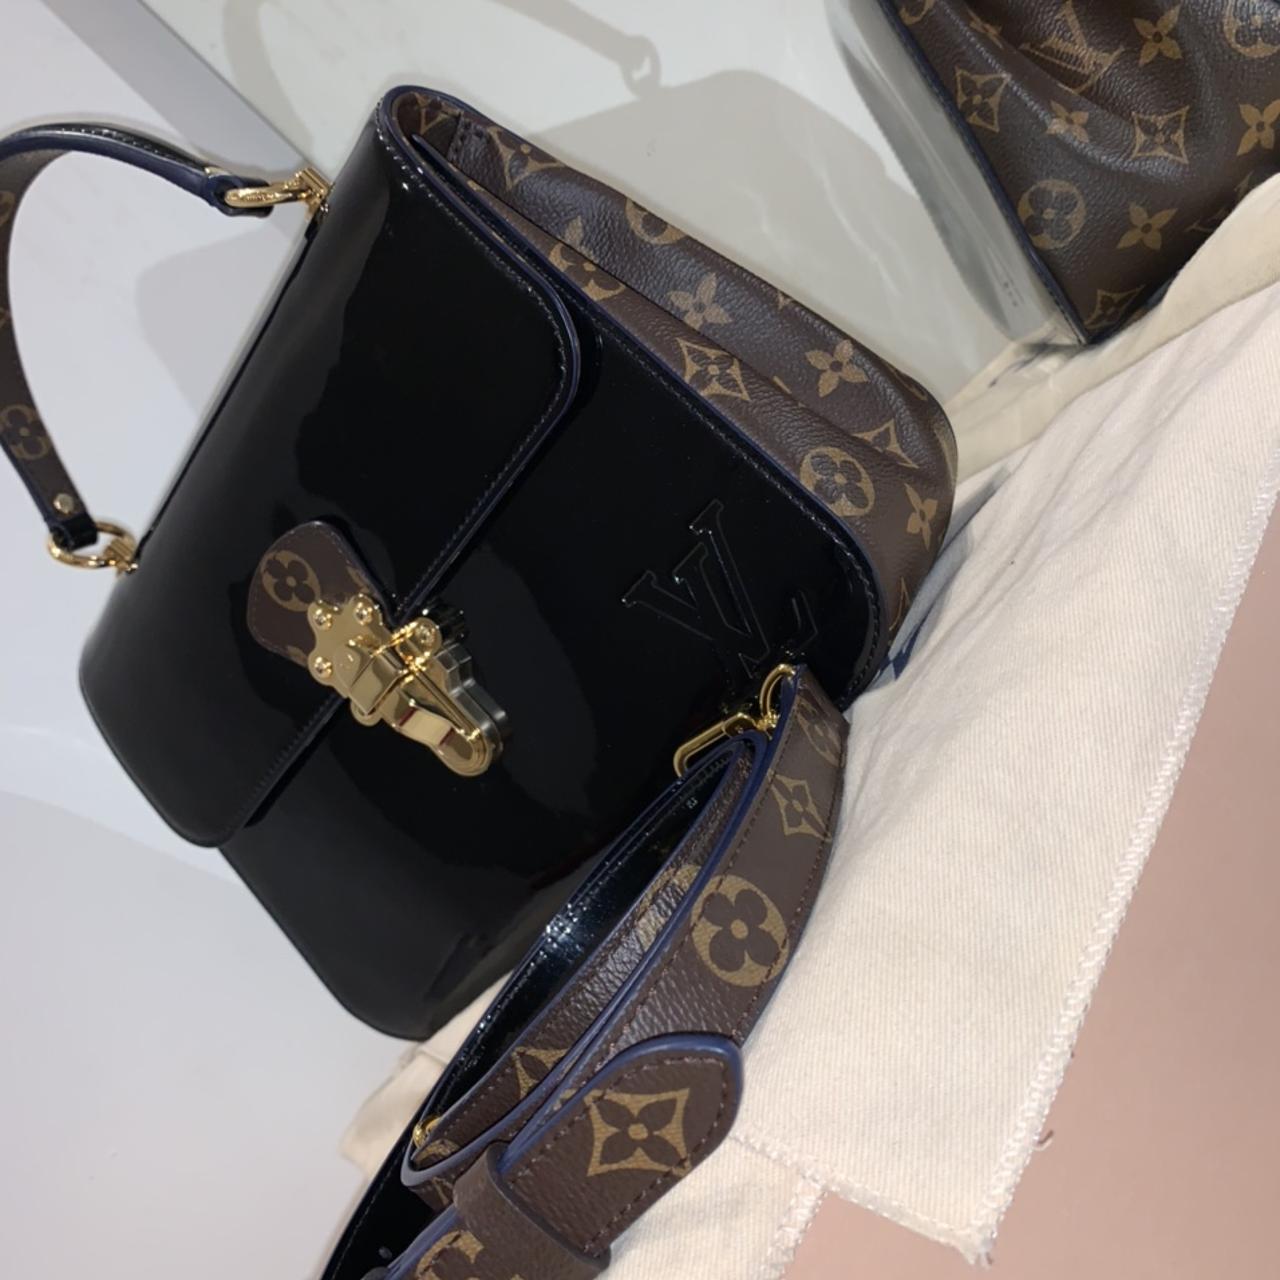 men Louis Vuitton side bag #lv #louisvuitton - Depop